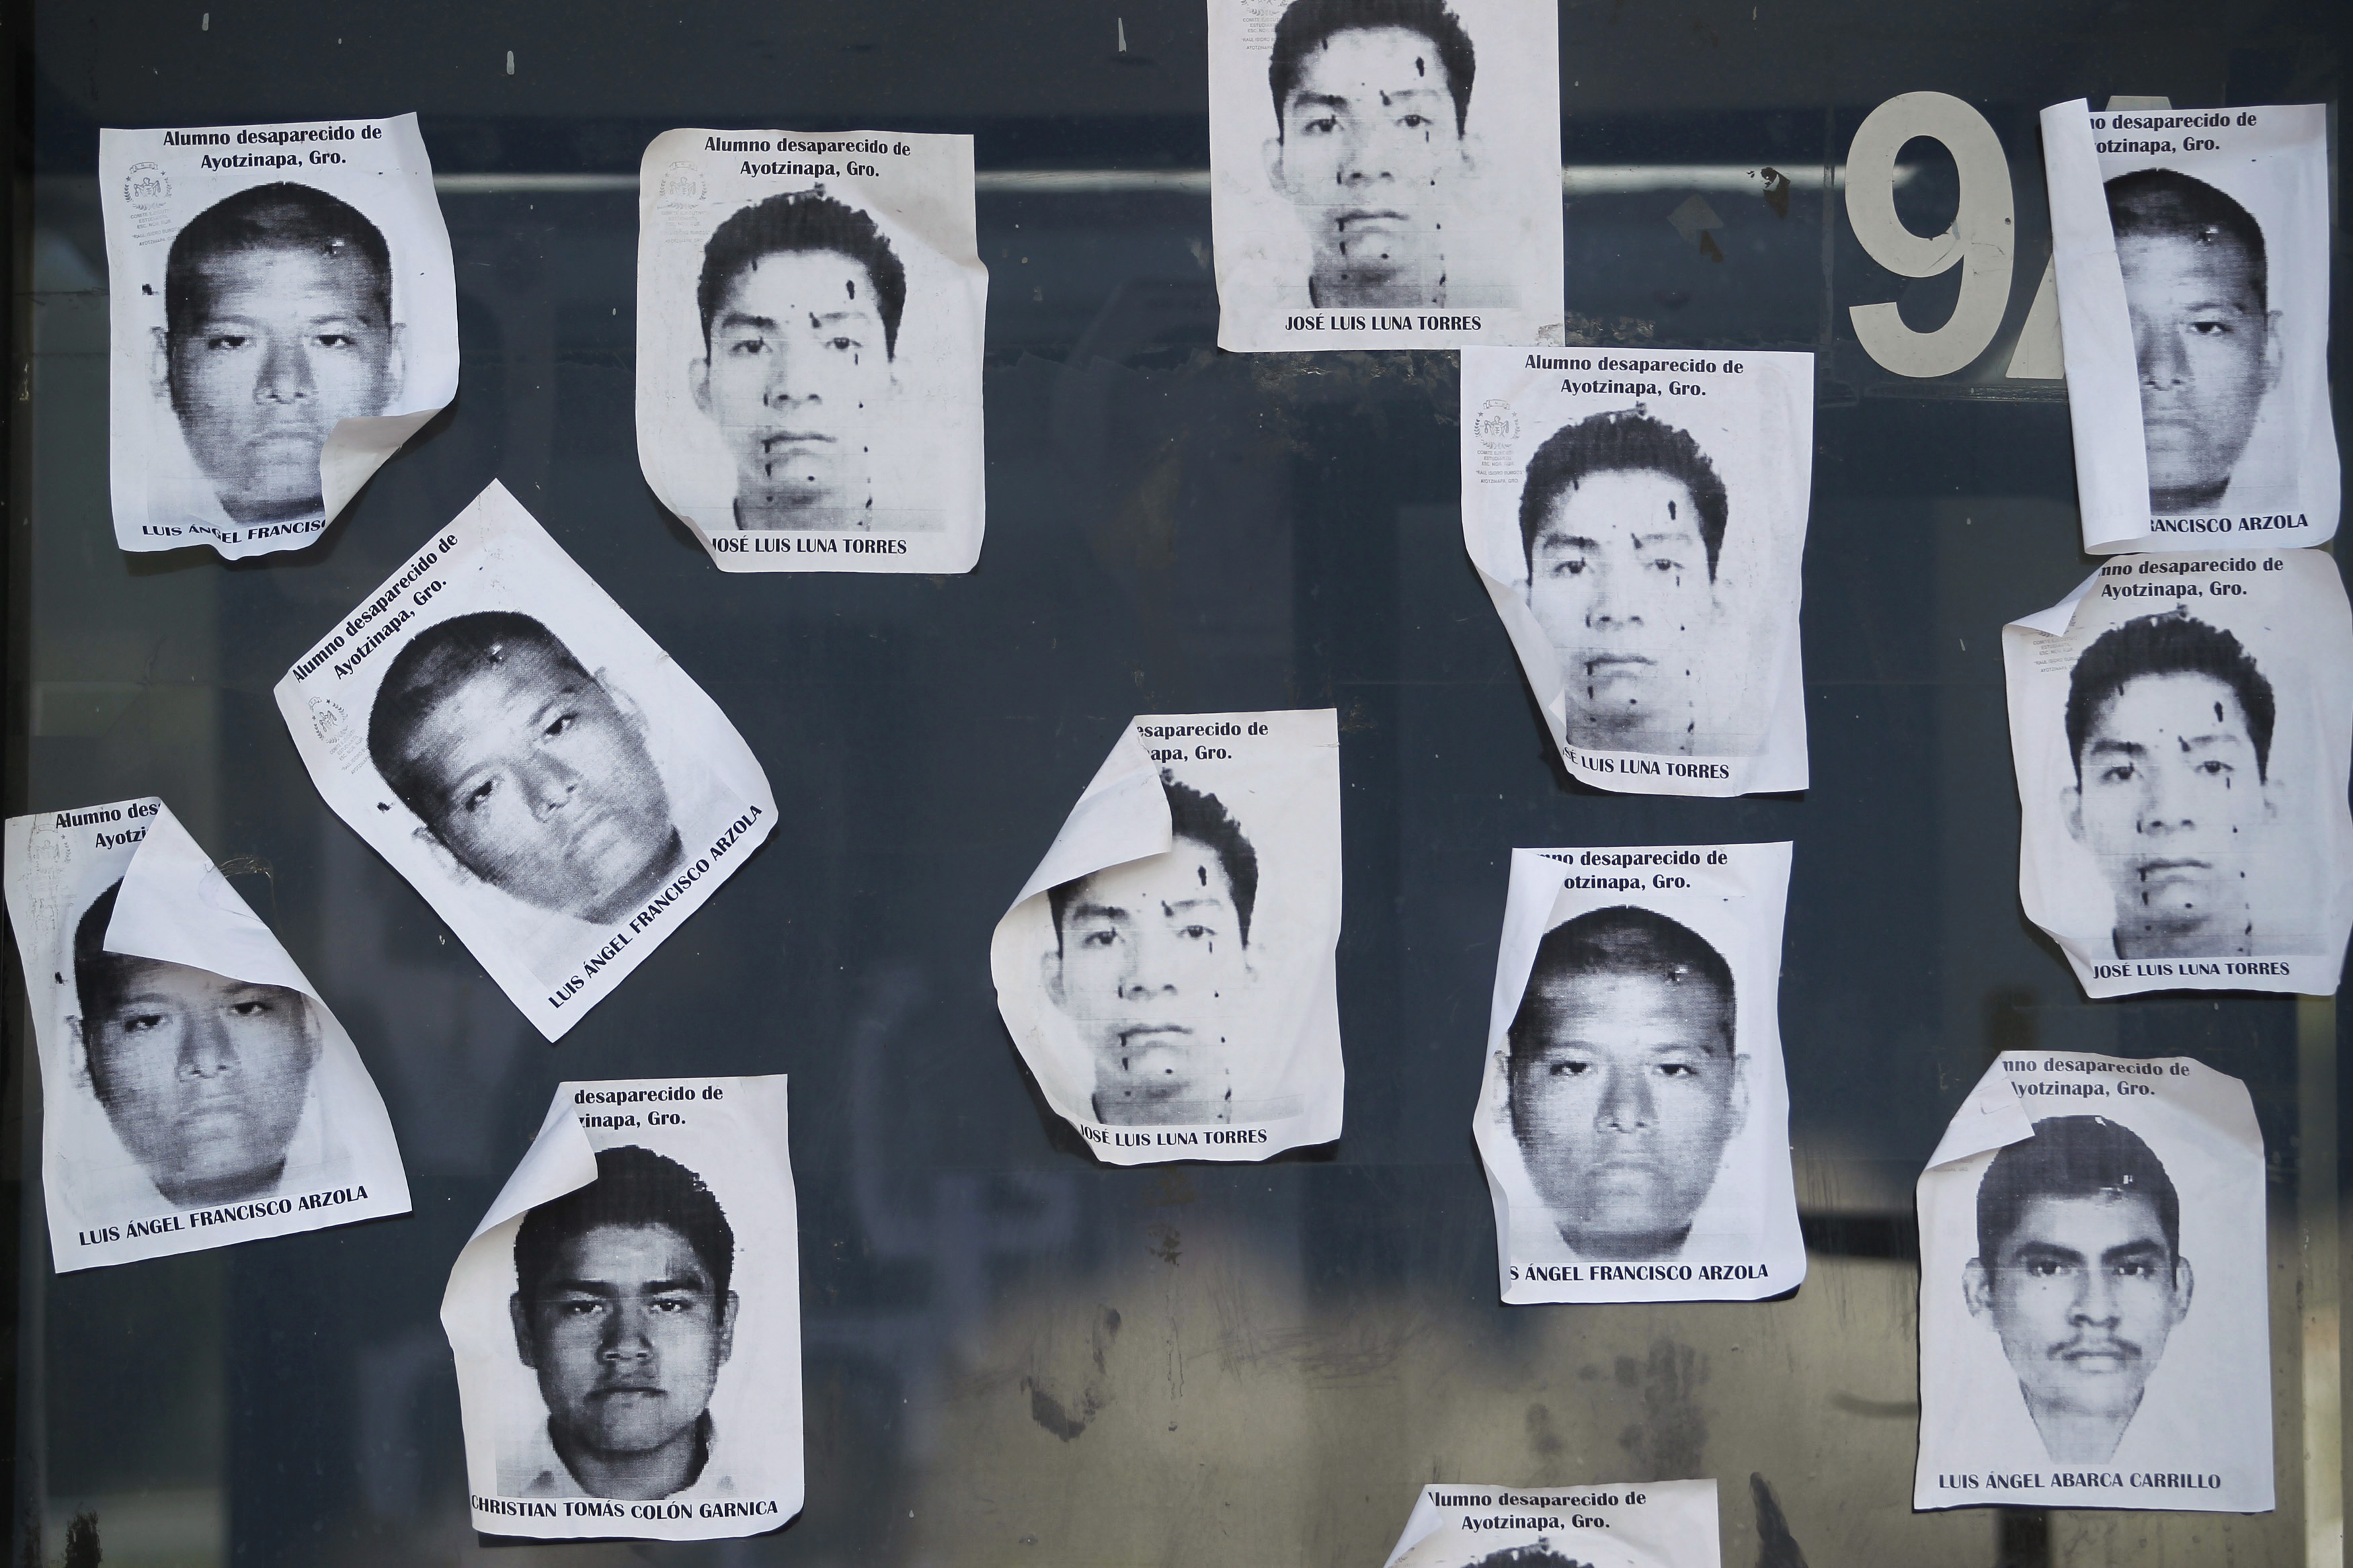  Evidencian tortura en 10 detenidos por caso Iguala